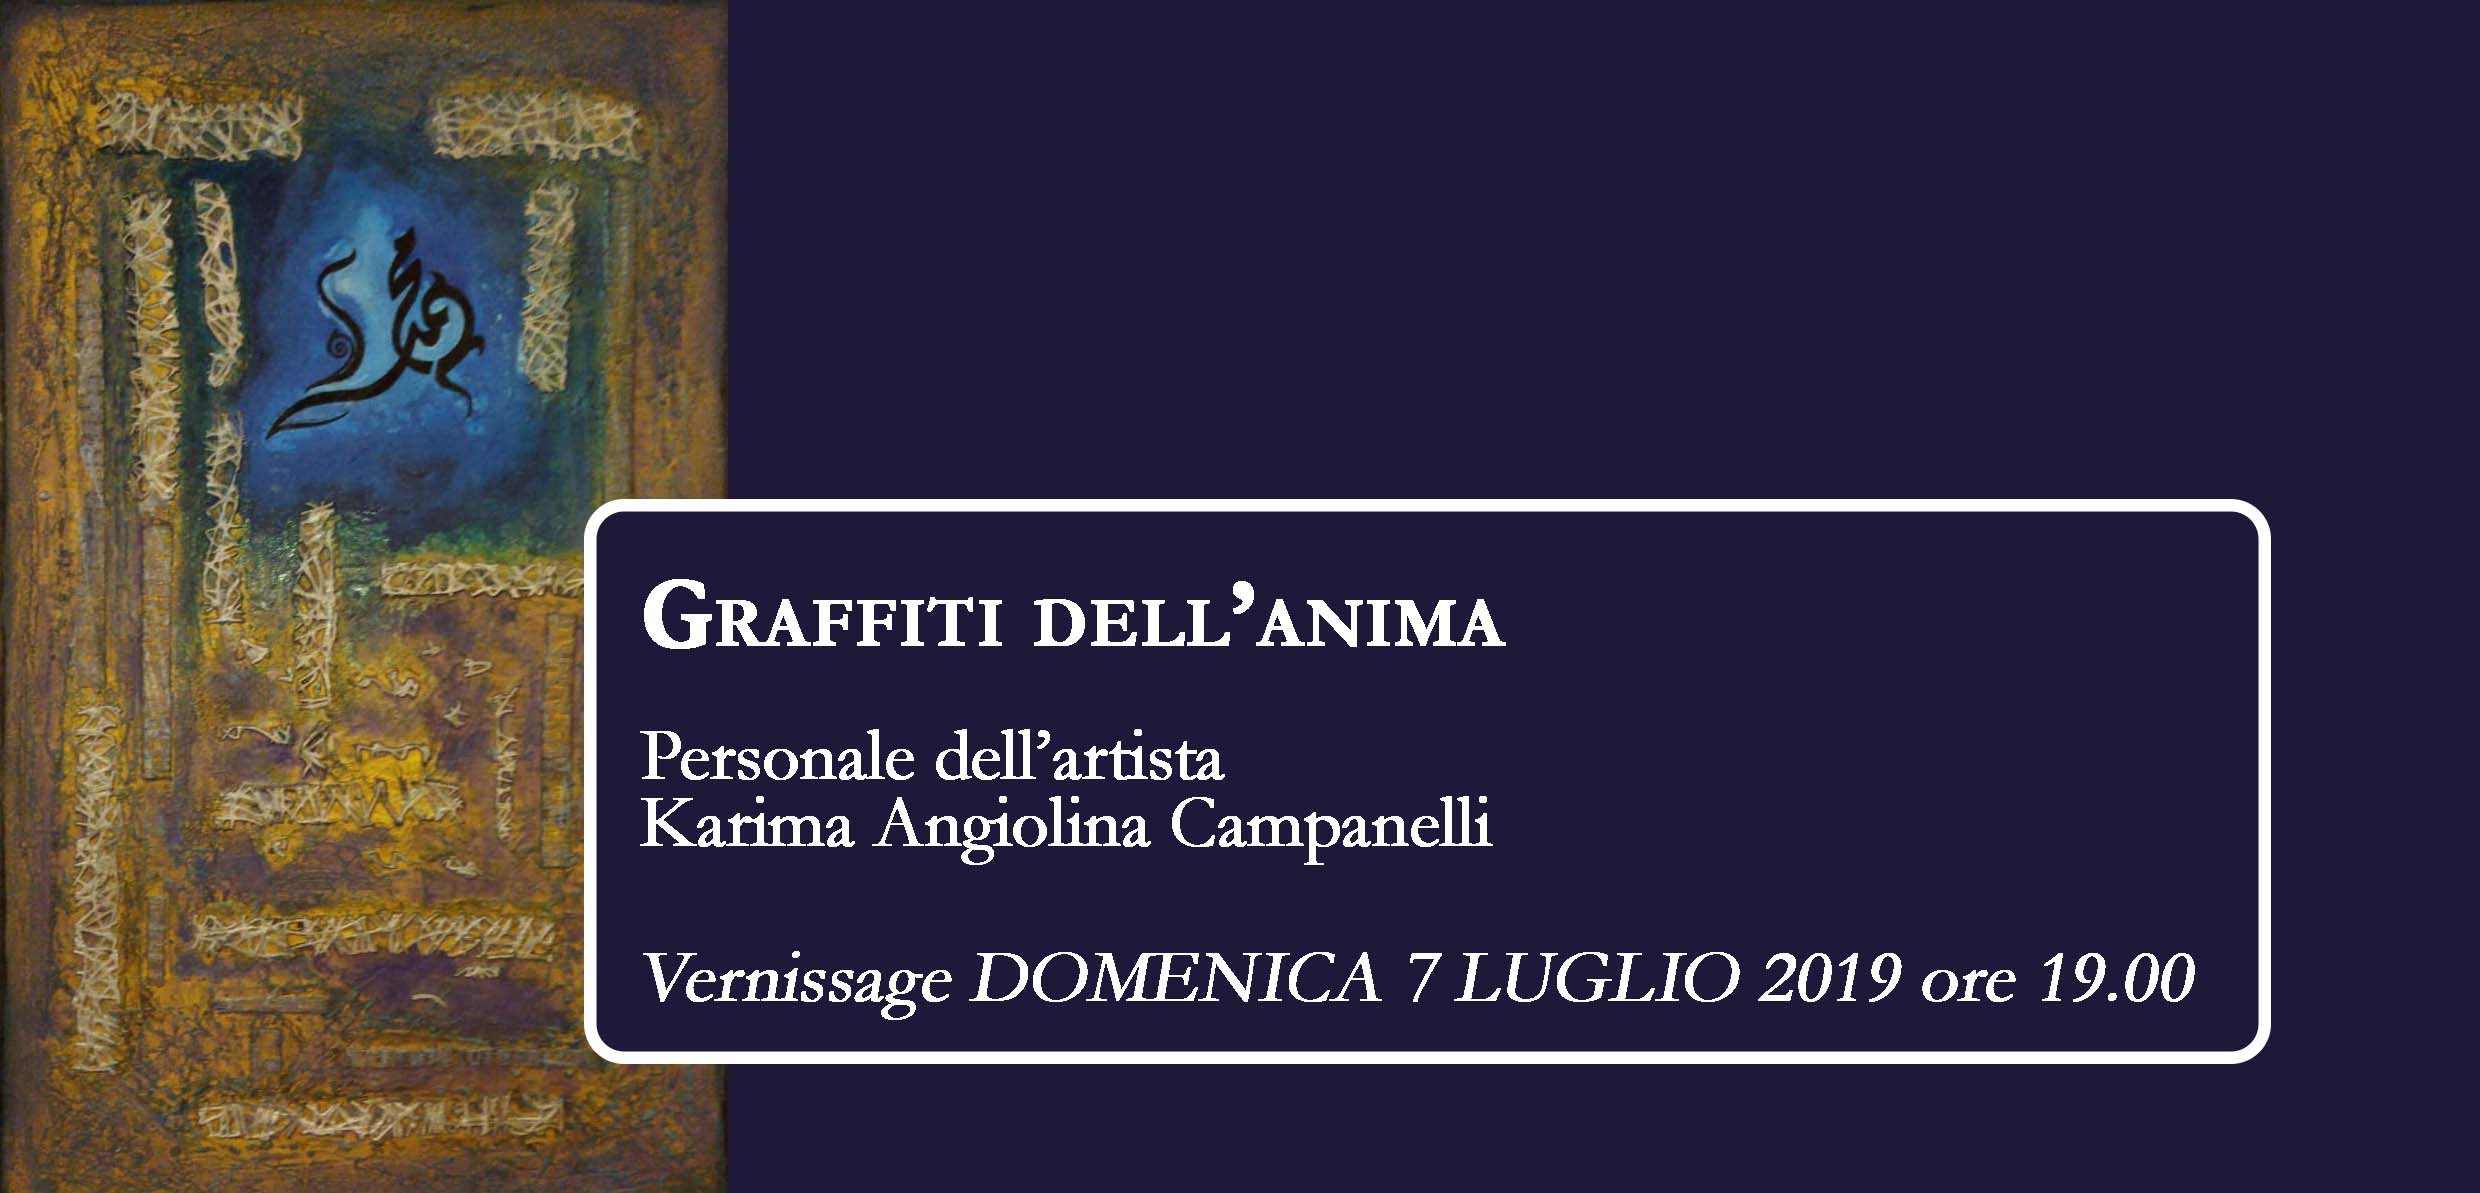 “Graffiti dell’anima” la personale dell’artista Karima Angiolina Campanelli a Palazzo Paolo V